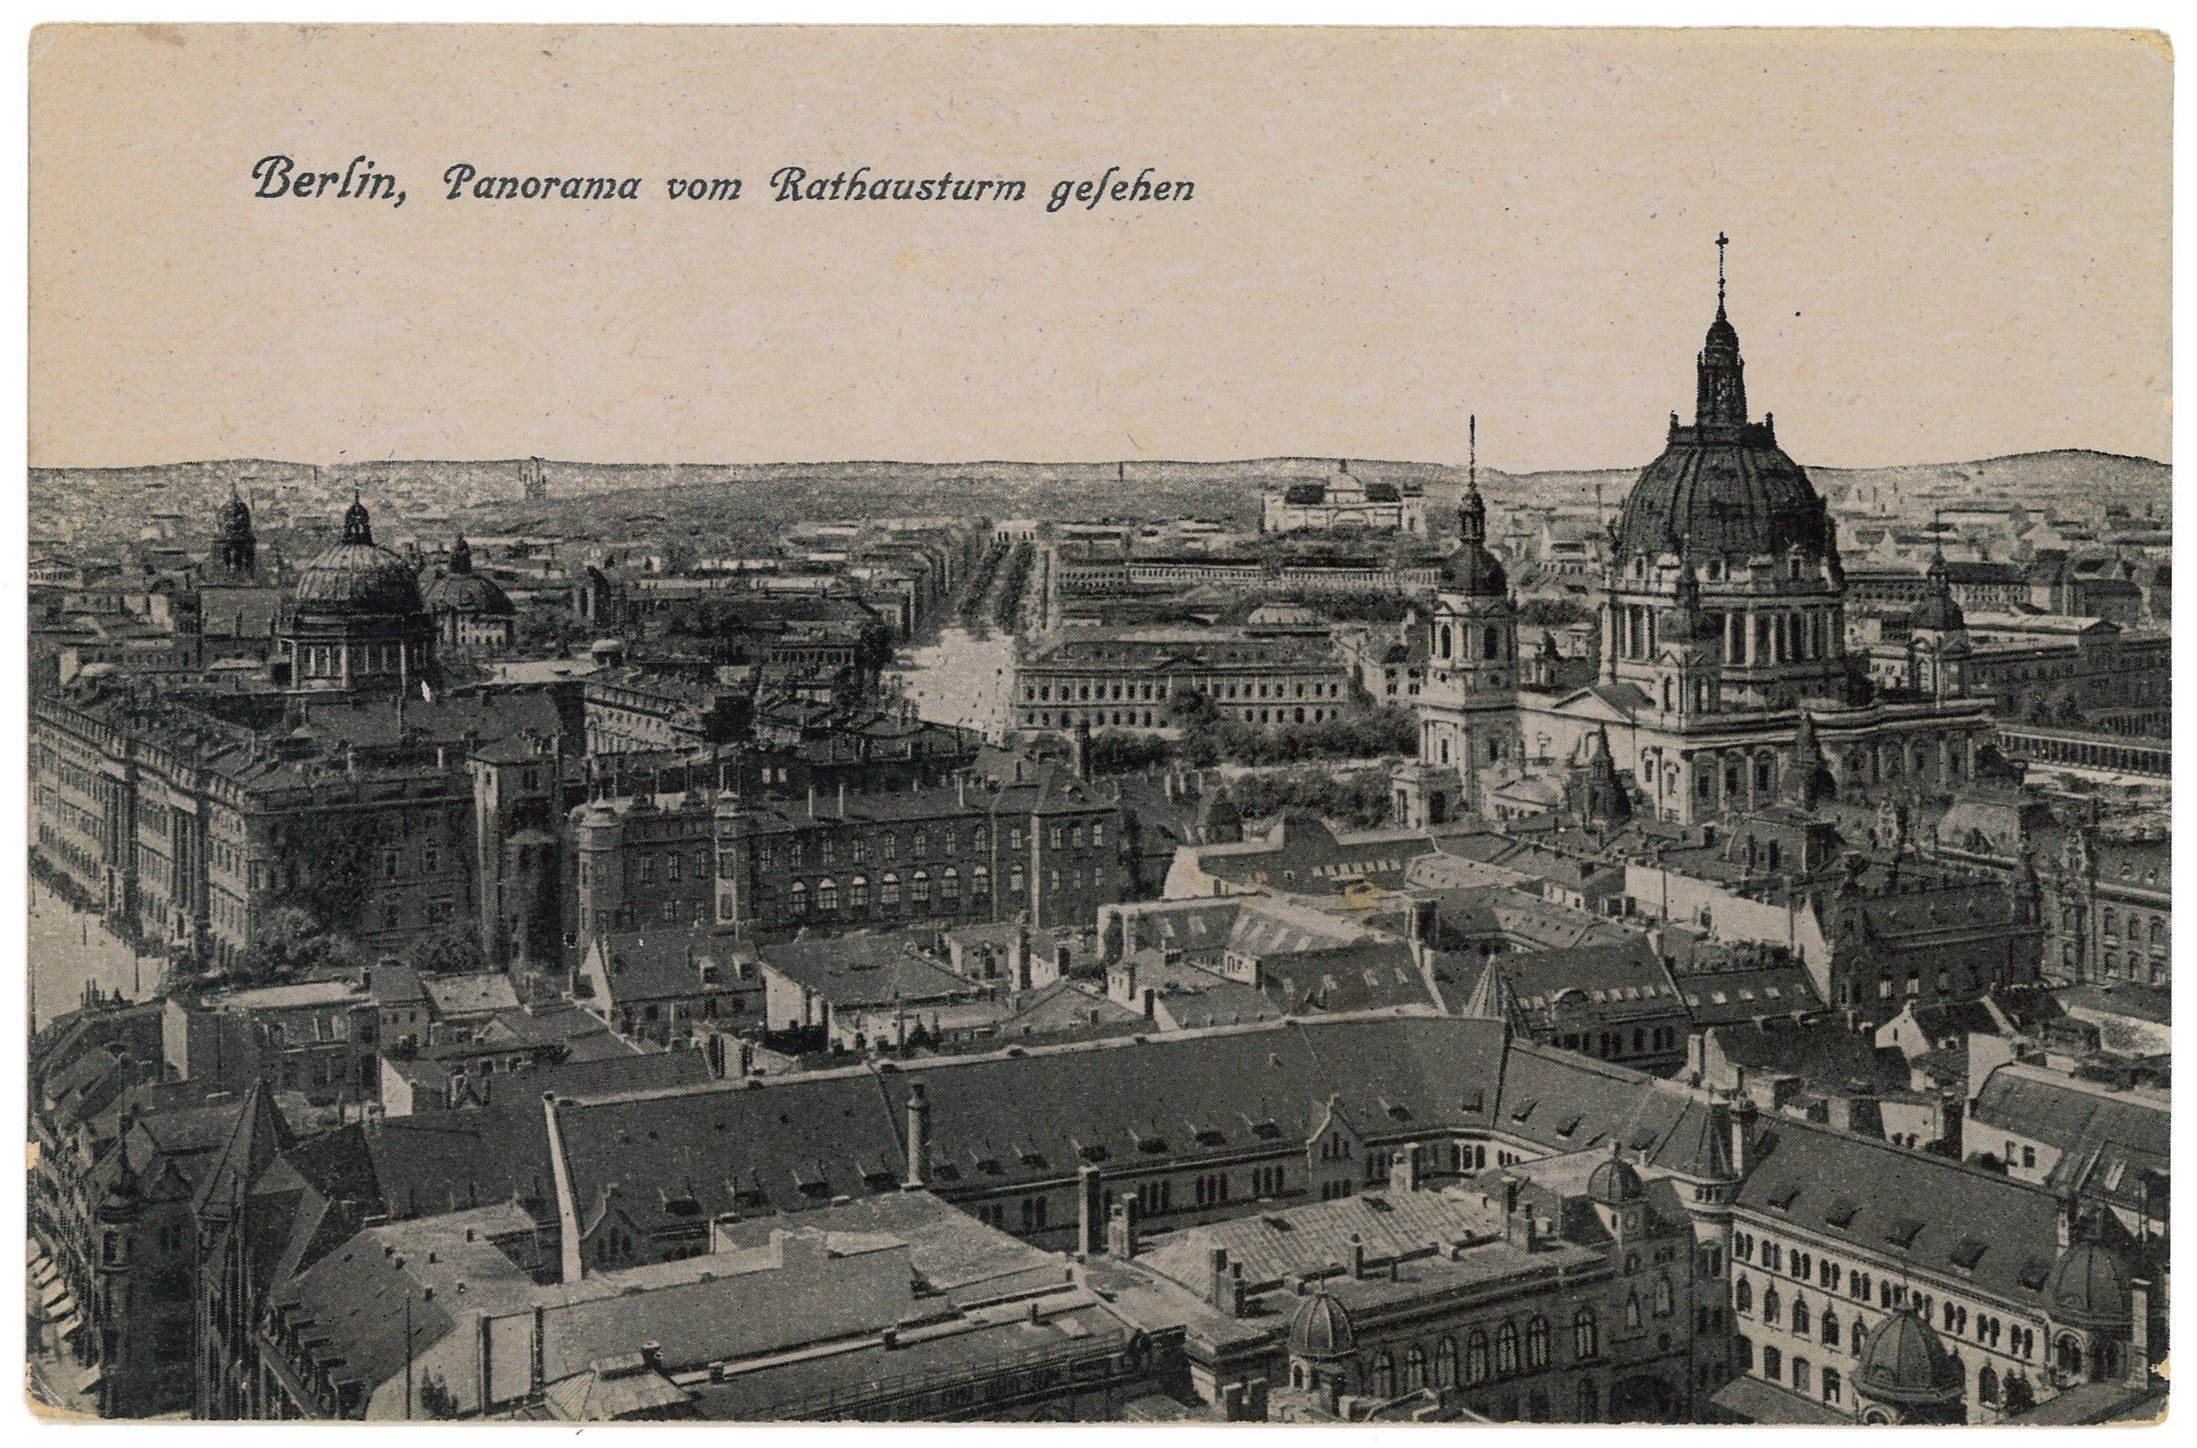 Berlin-Mitte: Blick von Rathausturm nach Nordwesten (Landesgeschichtliche Vereinigung für die Mark Brandenburg e.V. CC BY)